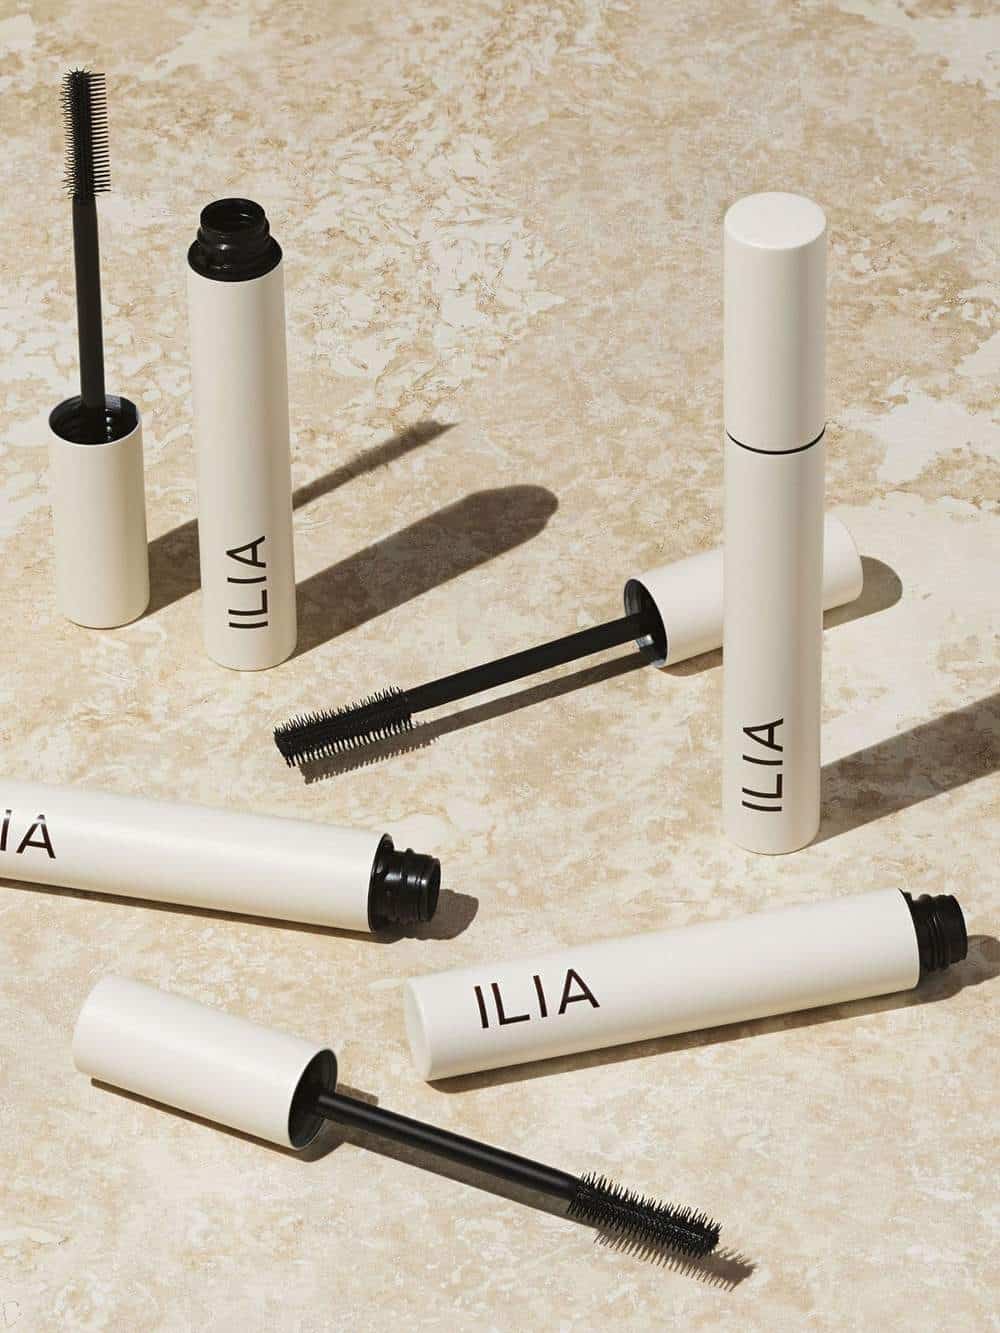 ILIA - The best non toxic mascaras | HelloGlow.co